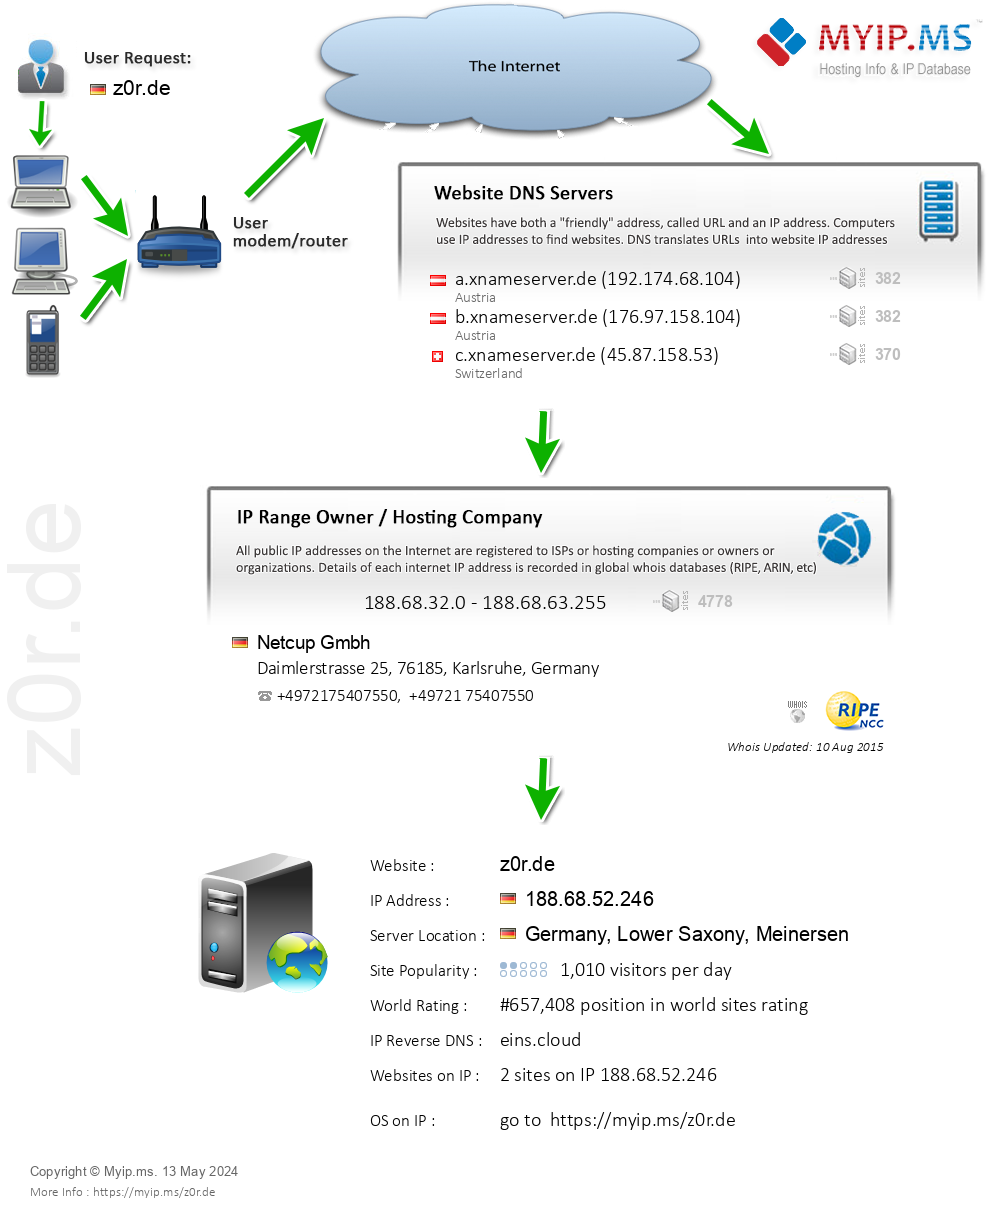 Z0r.de - Website Hosting Visual IP Diagram